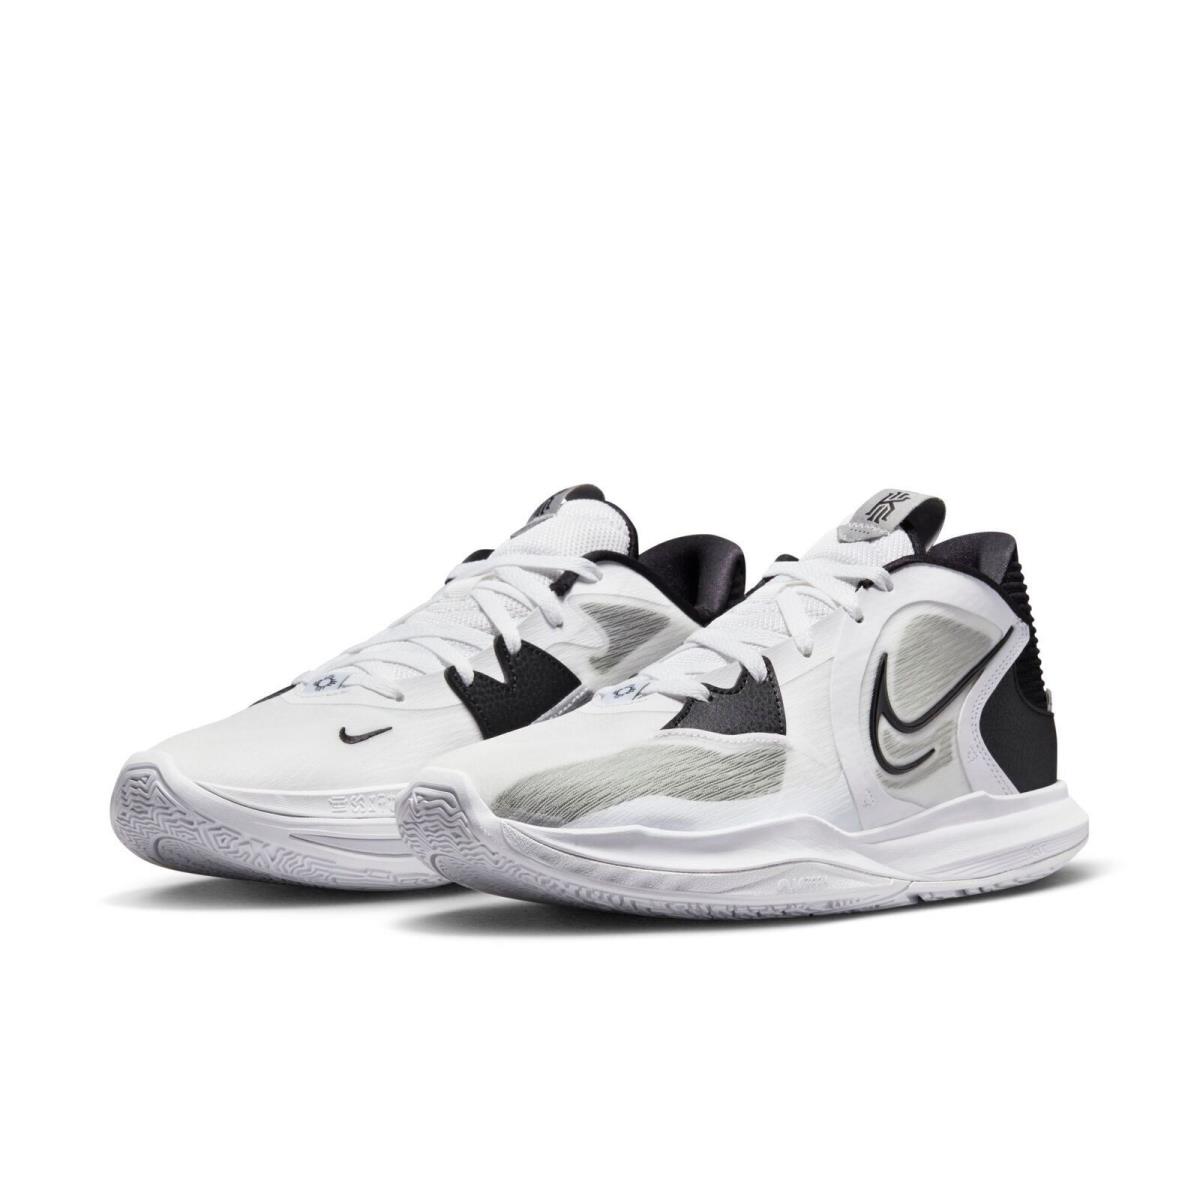 Nike Kyrie Low 5 DJ6012-102 Men White/gray/black Basketball Sneaker Shoes NR3859